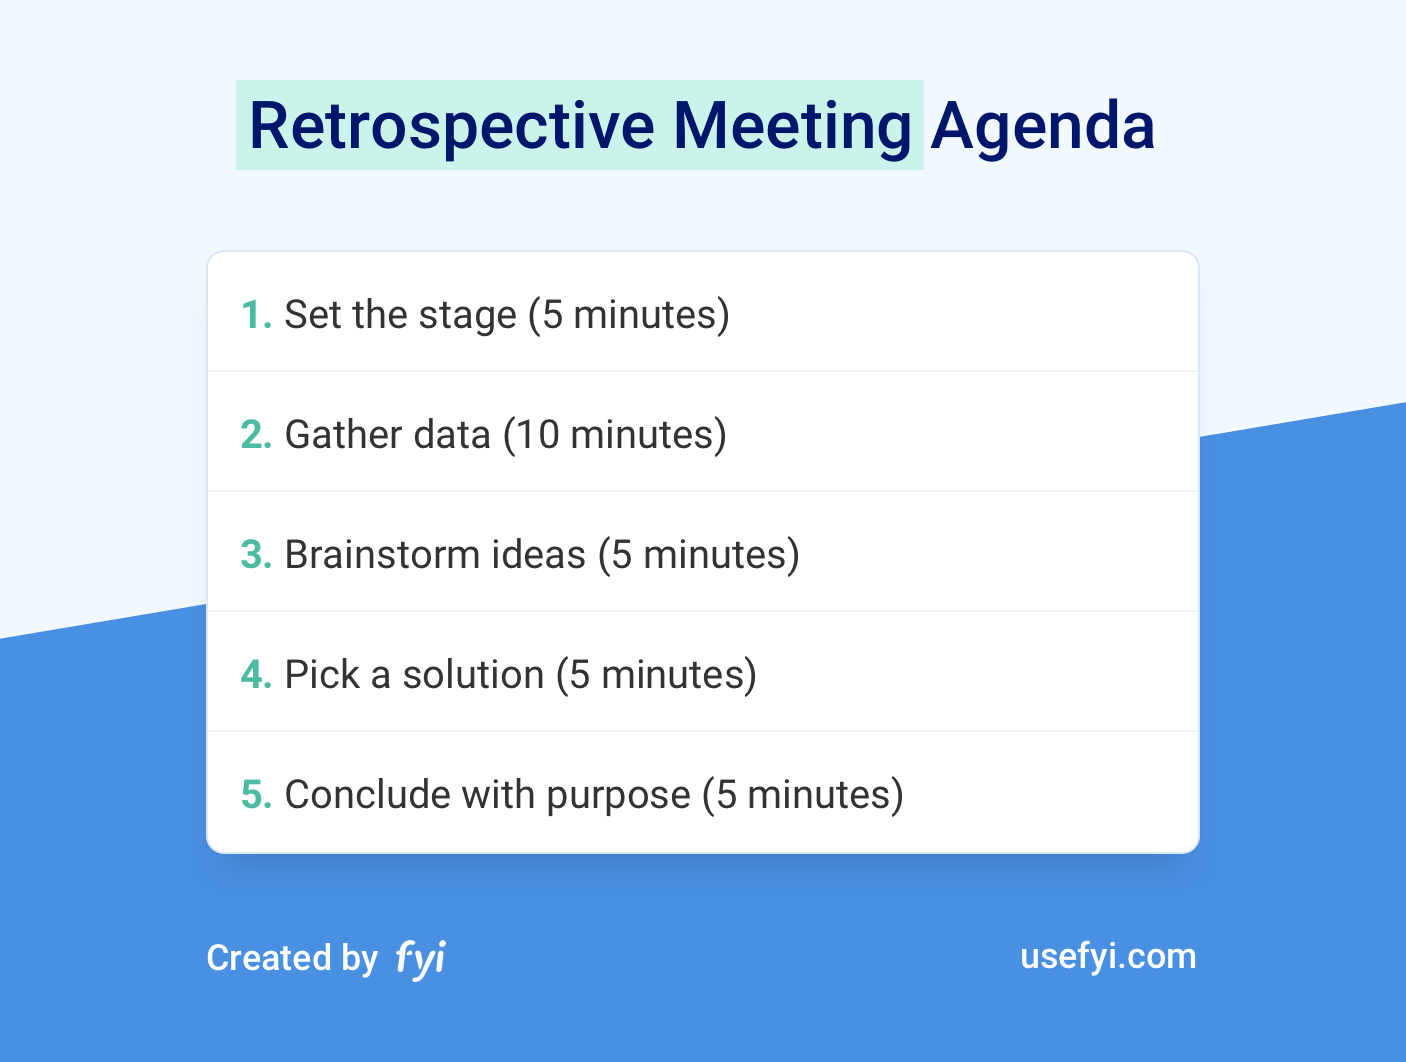 Fun Agenda Template from usefyi.com